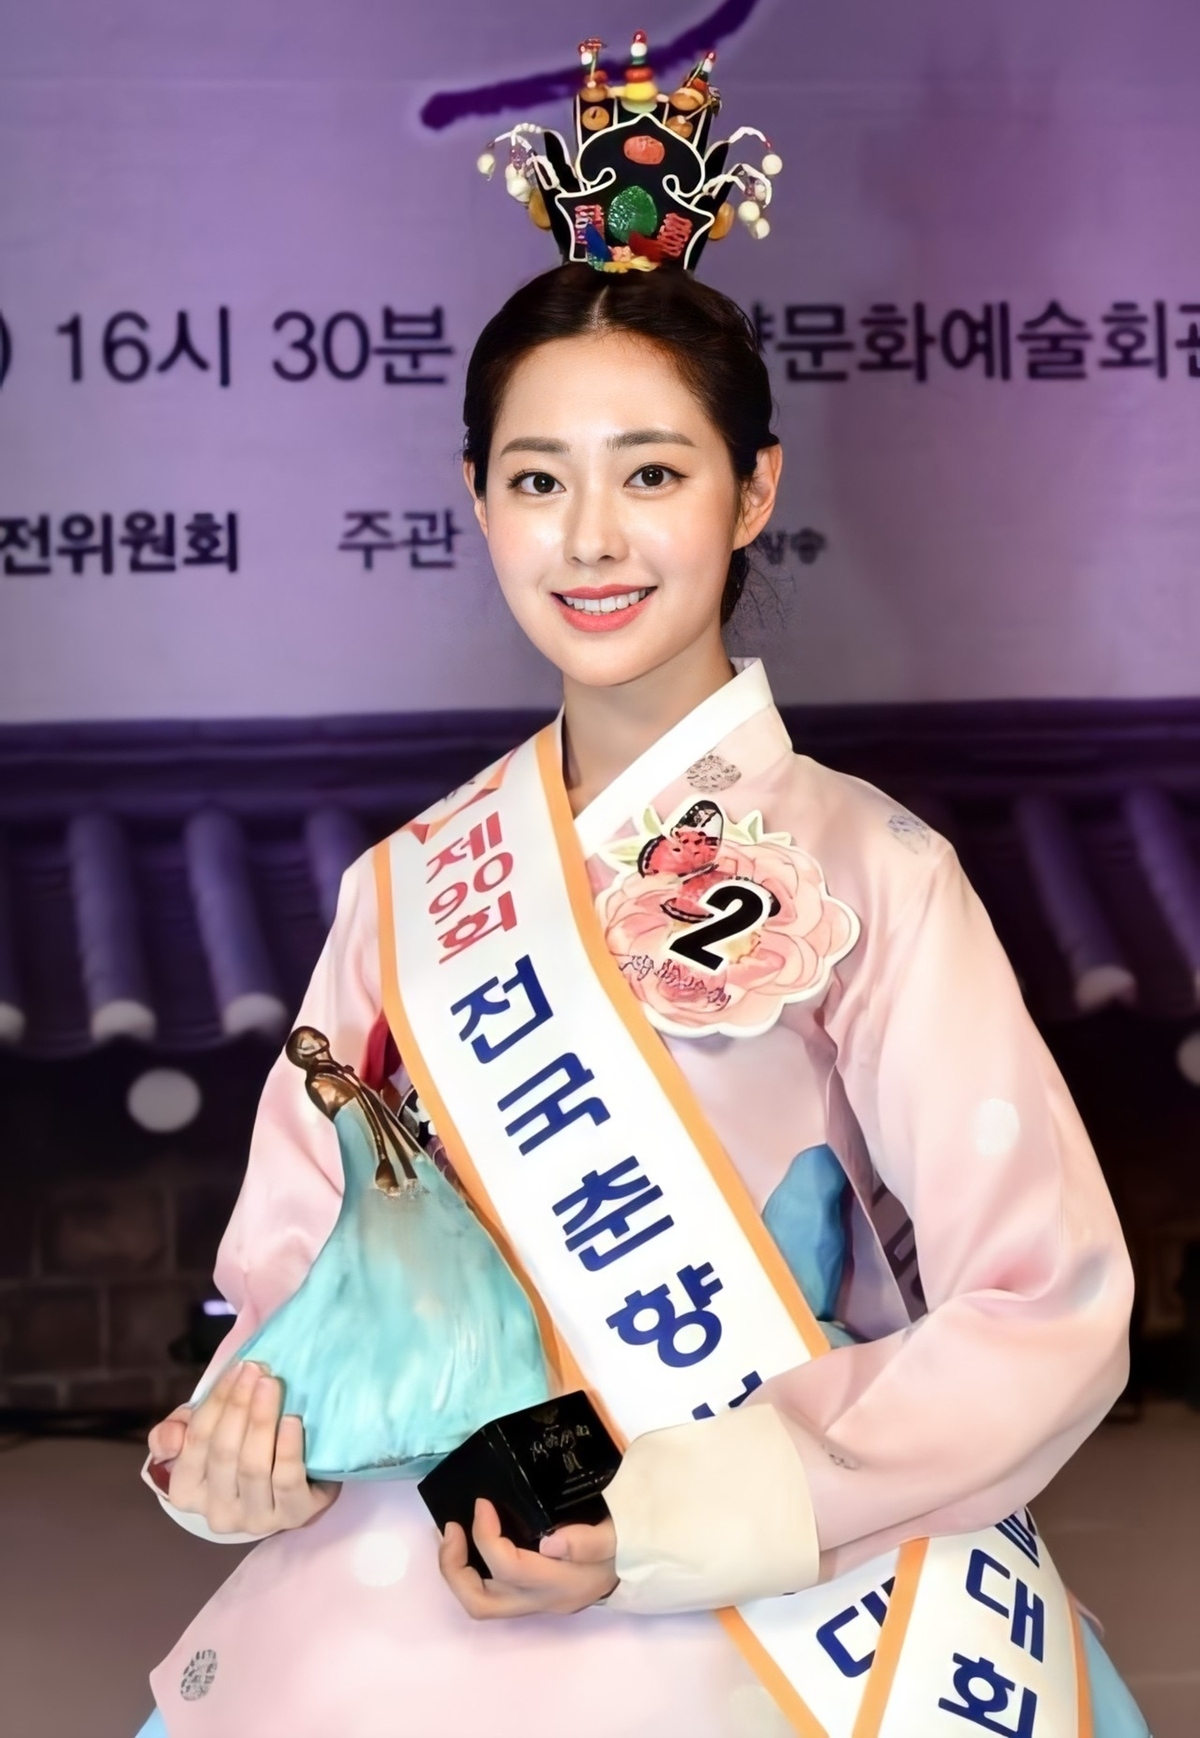 Mới đây, Shin Seulgi sinh năm 1998 đã vượt qua 32 gương mặt nổi bật để đăng quang Hoa hậu Truyền thống Hàn Quốc 2020 (Miss Chunhyang 2020). 